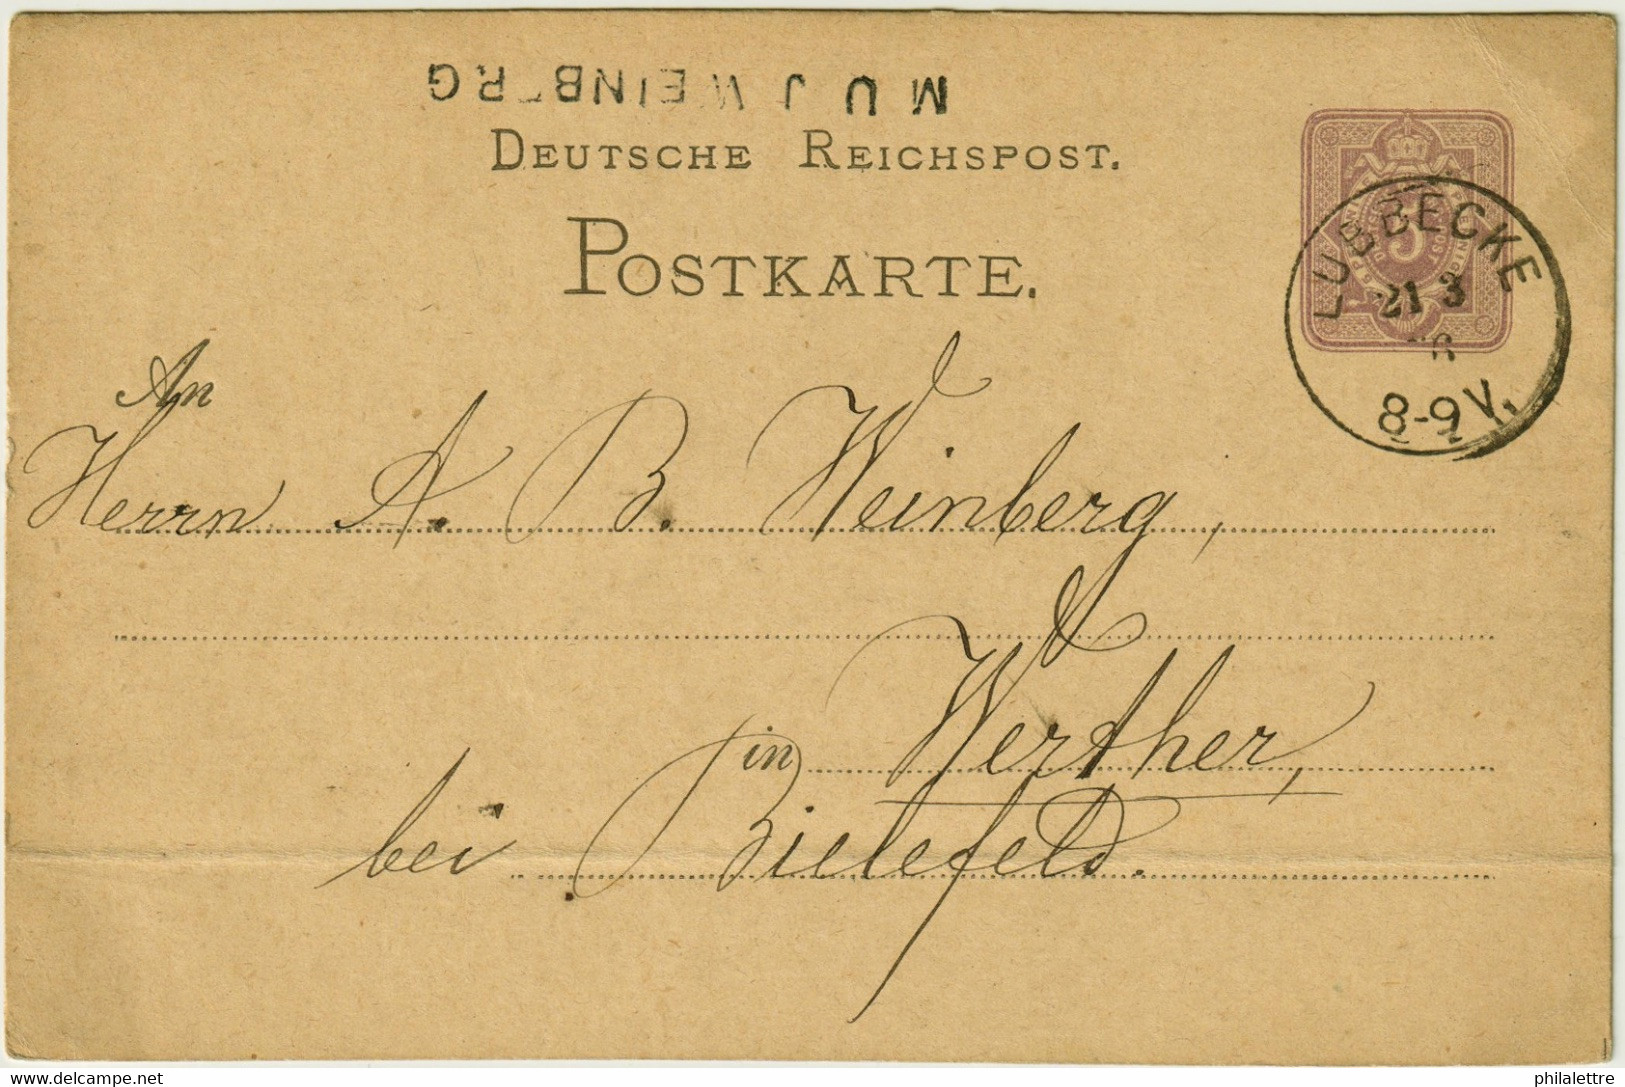 ALLEMAGNE / DEUTSCHLAND - 1876 Einkreisstempel "LÜBBECKE" Auf 5p GS Postkarte - Lettres & Documents